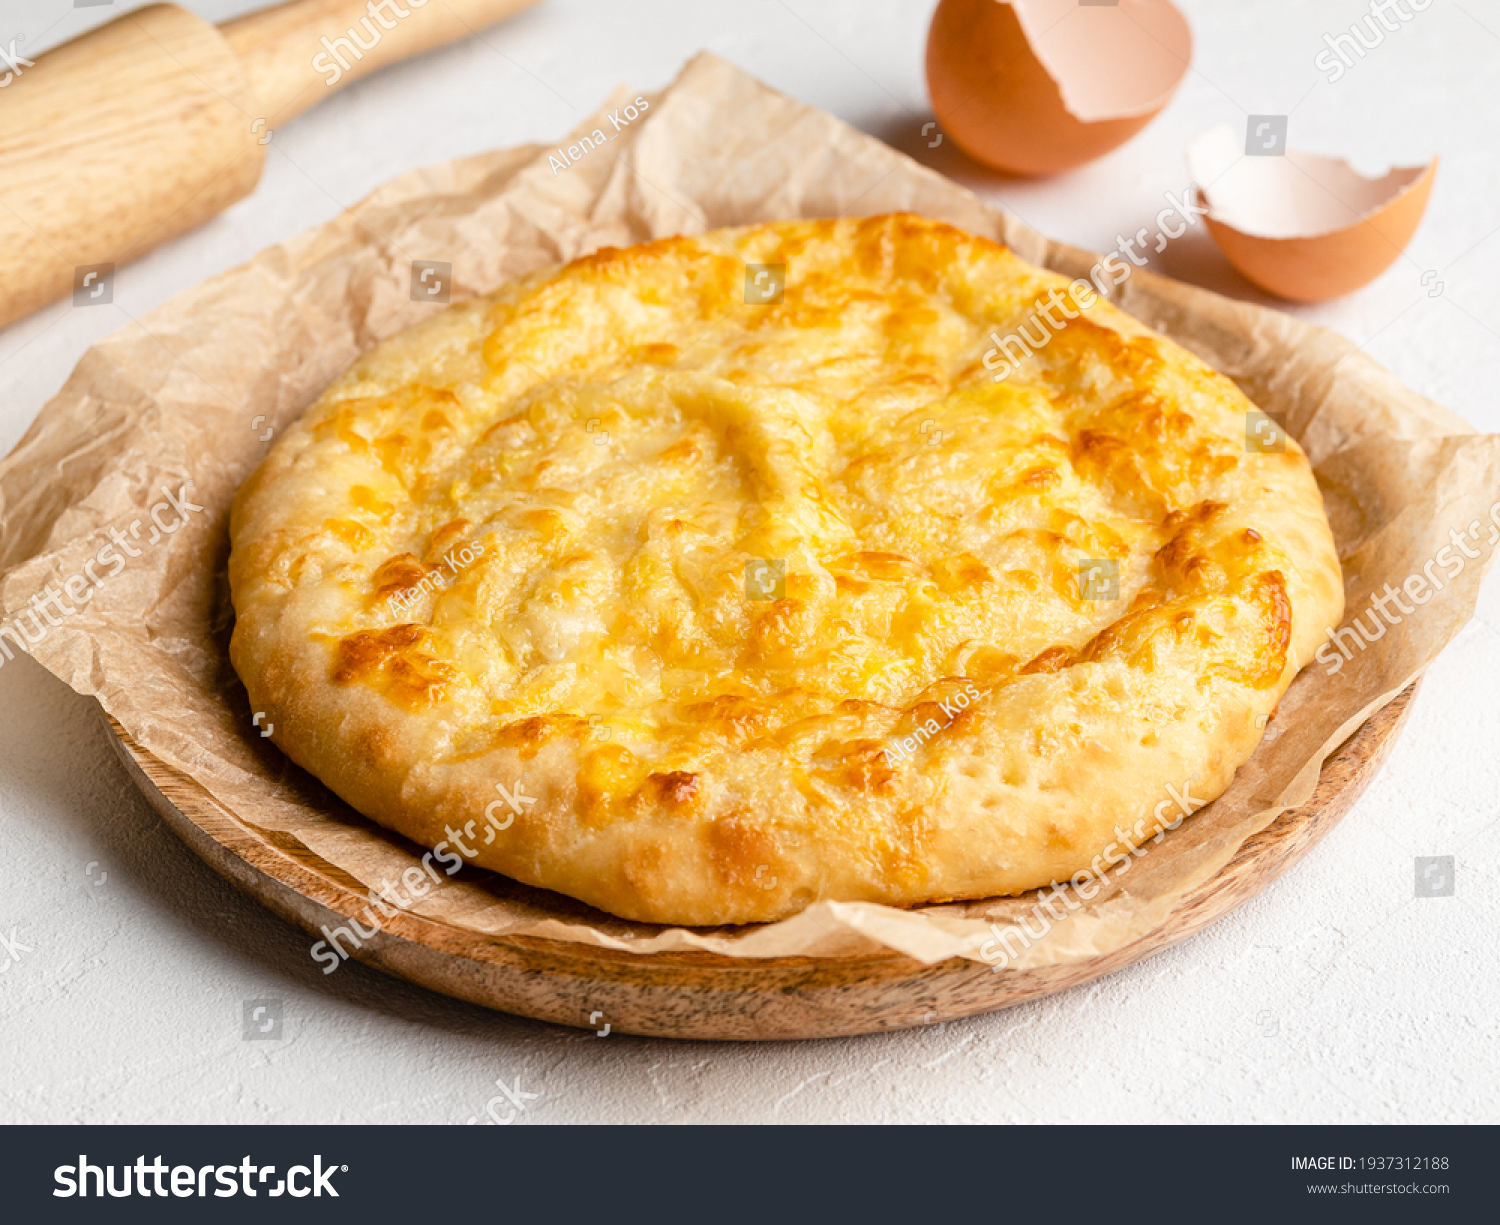 хачапури с сыром в духовке фото